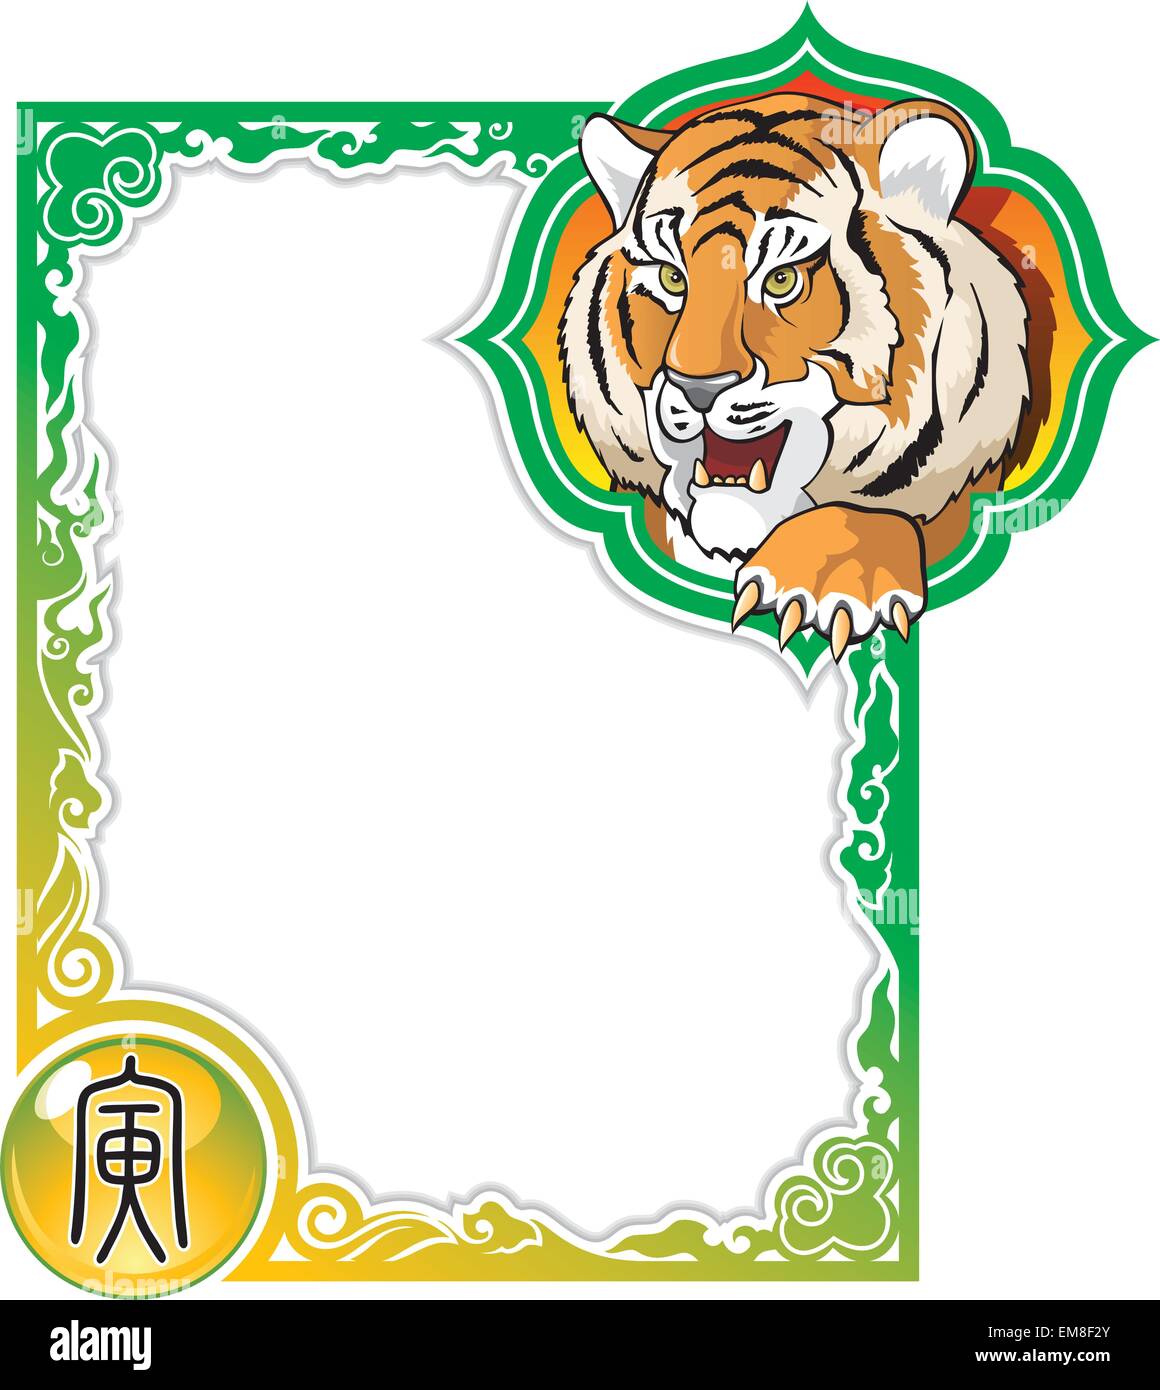 Chinesisches Horoskop-Frame-Serie: Tiger Stock Vektor